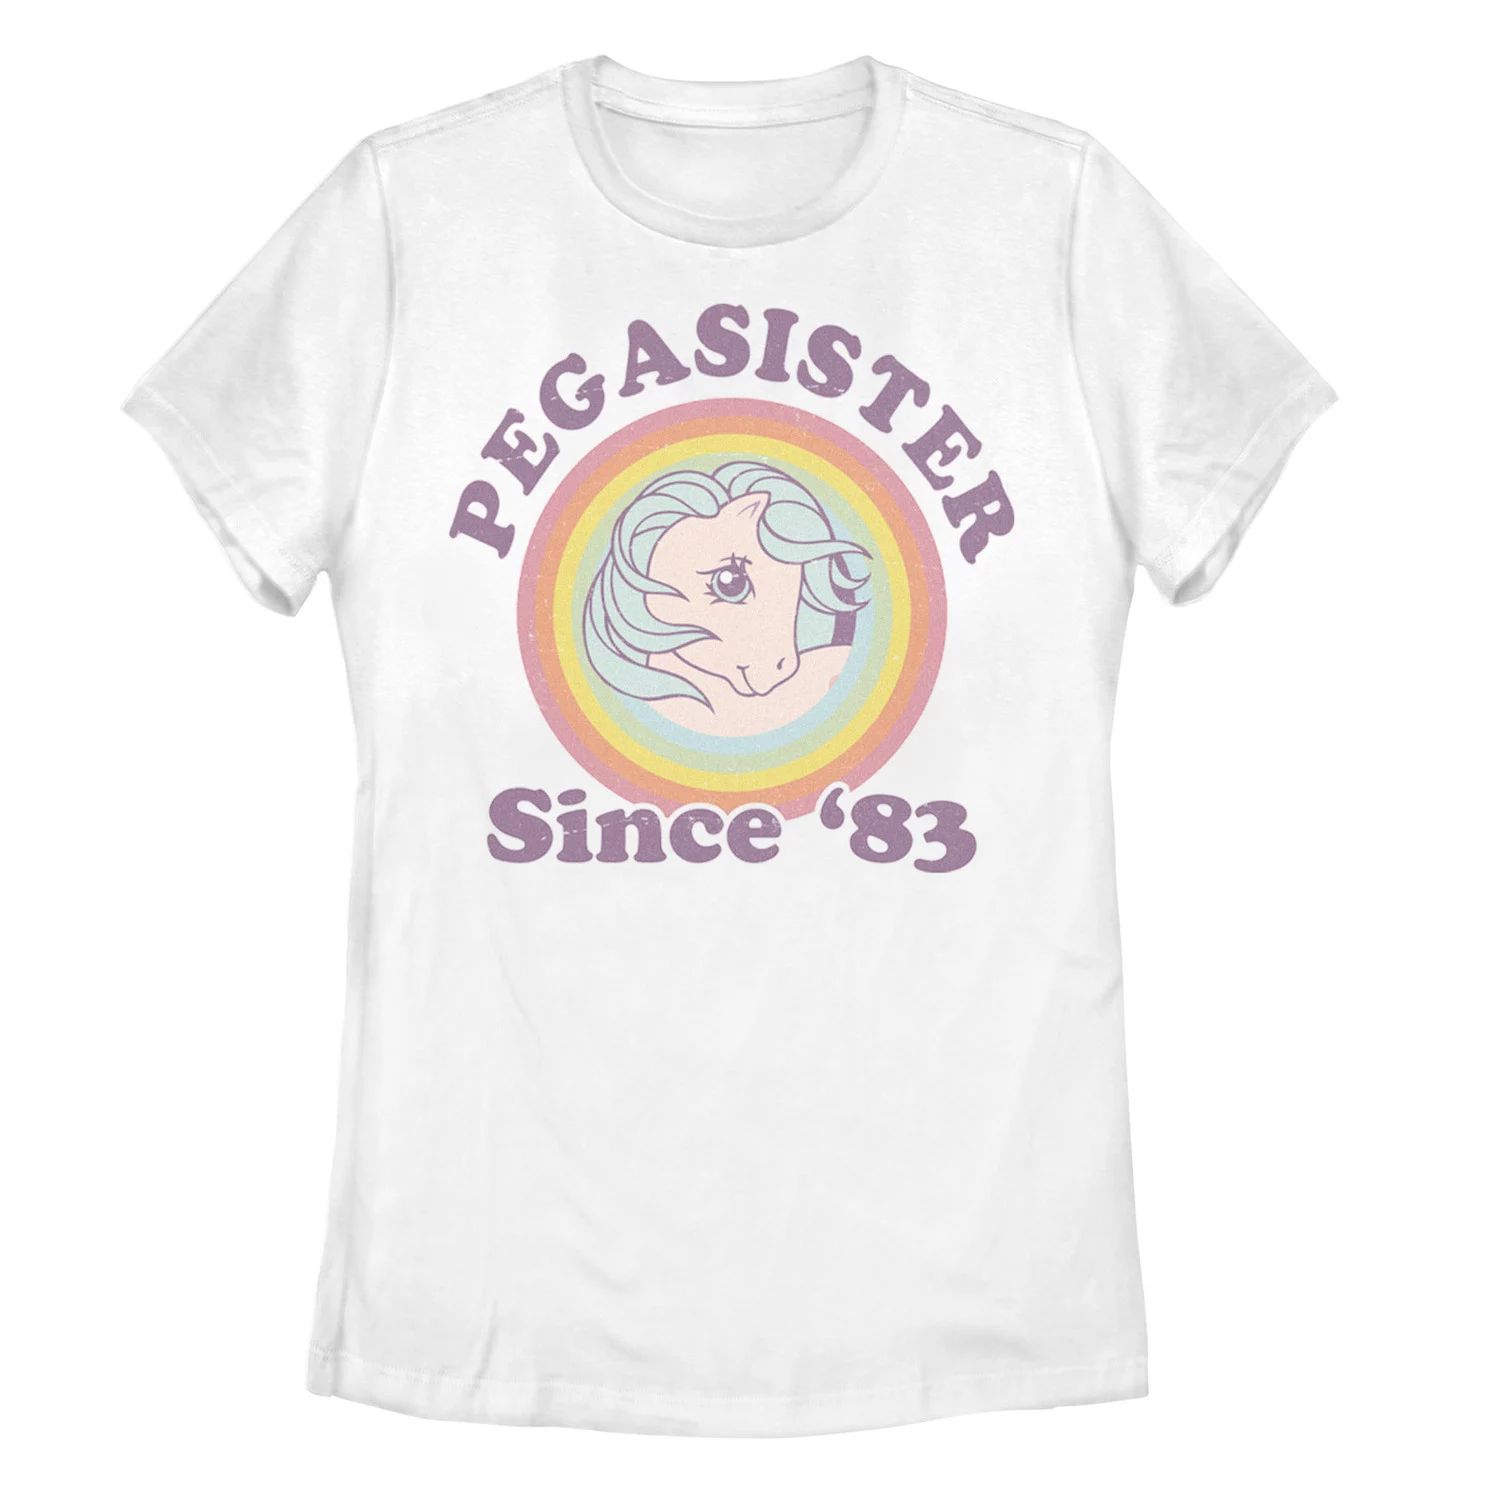 Детская футболка My Little Pony Pegasister с ретро-графикой 1983 года My Little Pony термокружка my little pony новое поколение розовая 330 мл фарфор